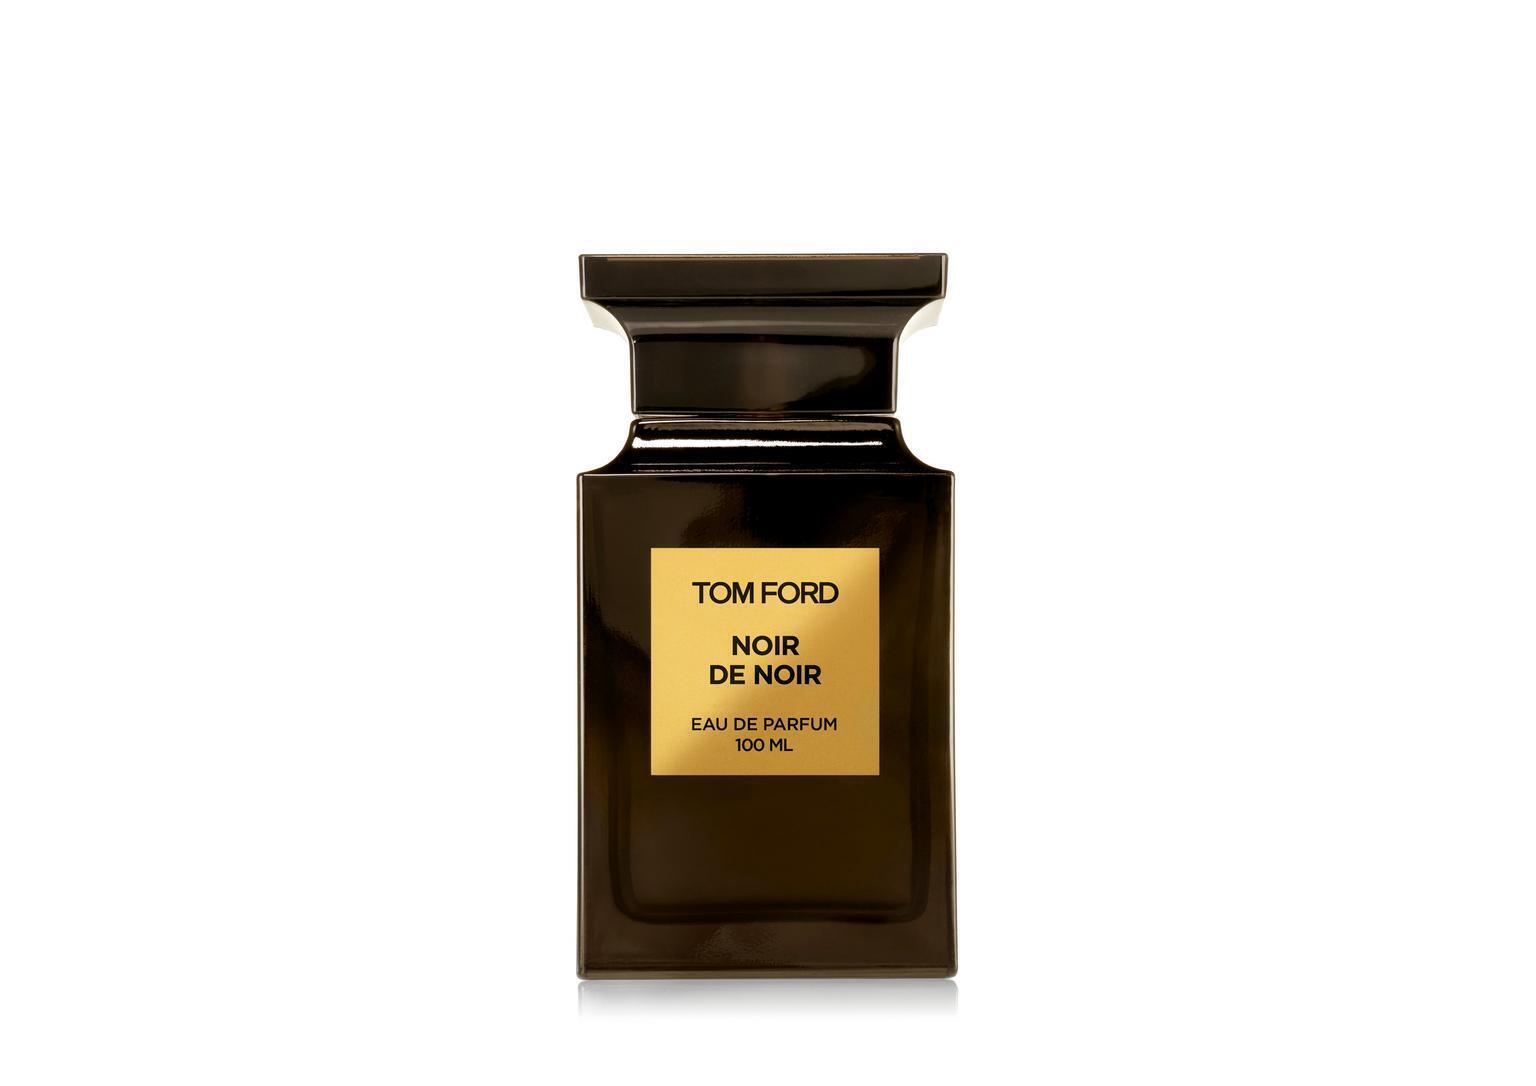 Tom Ford Noir De Noir Eau De Parfum For Women 100ml at Ratans Online Shop - Perfumes Wholesale and Retailer Fragrance